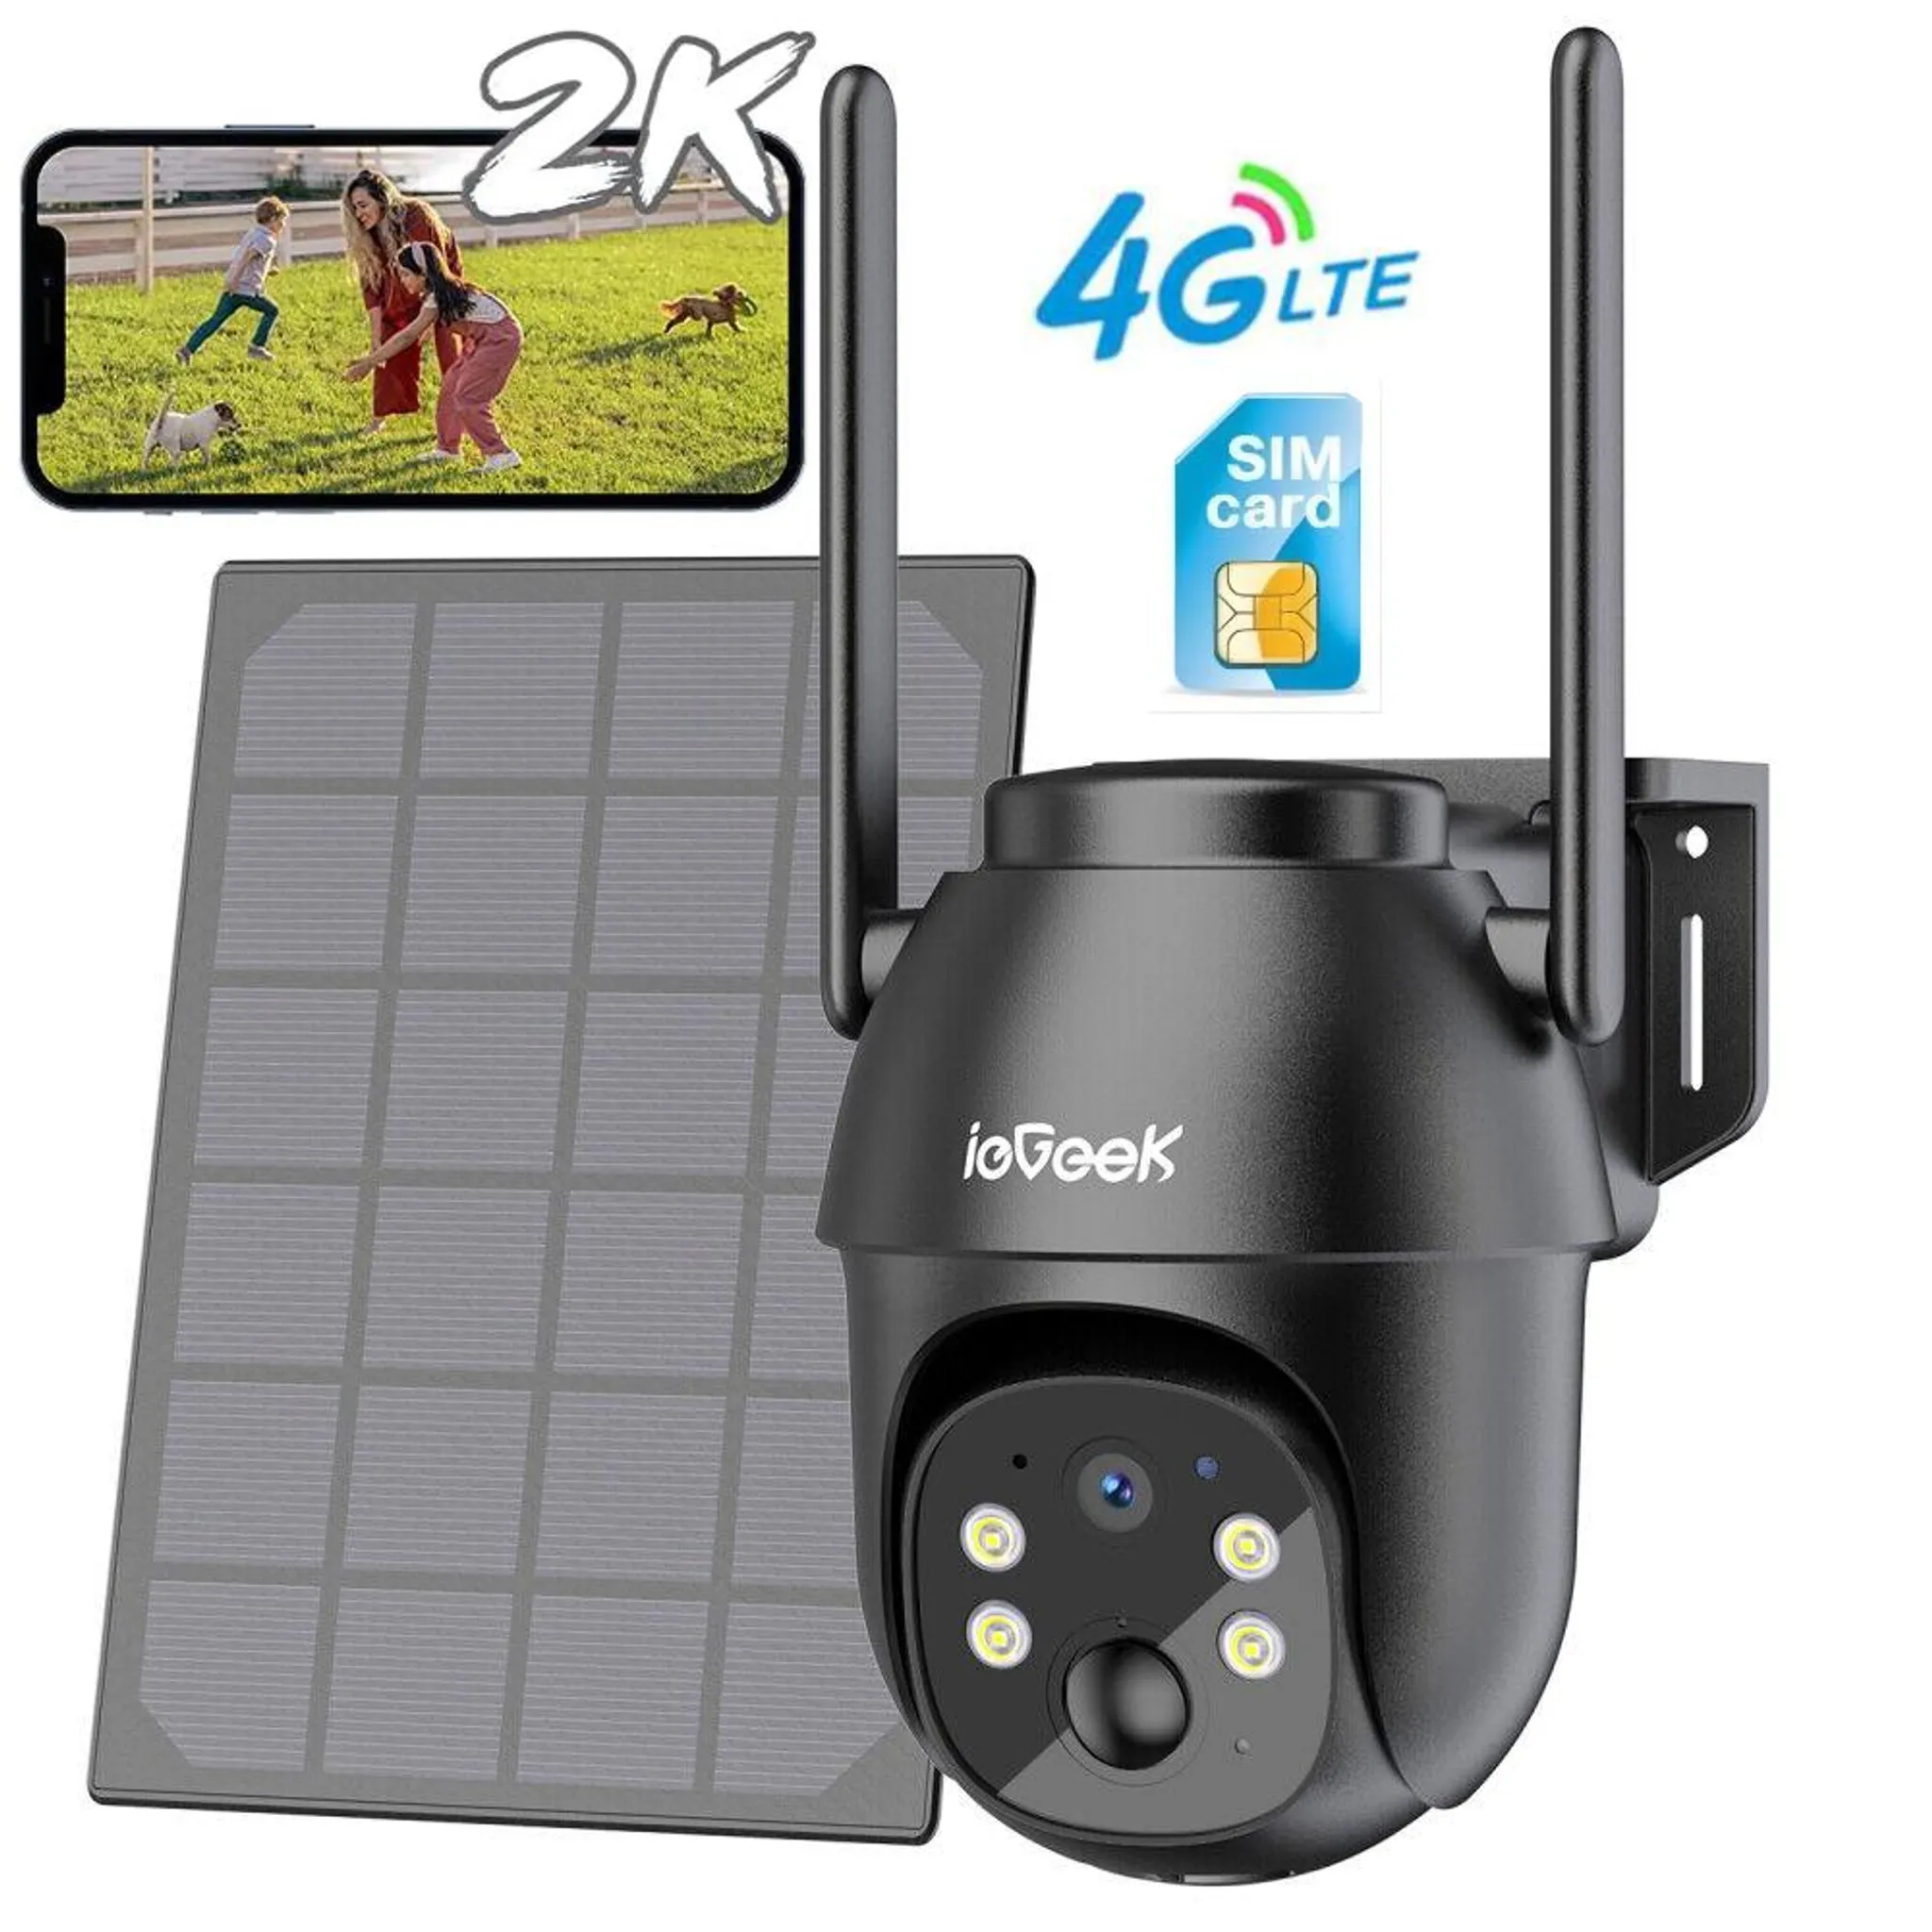 ieGeek 4G LTE Überwachungskamera Außen 2K mit